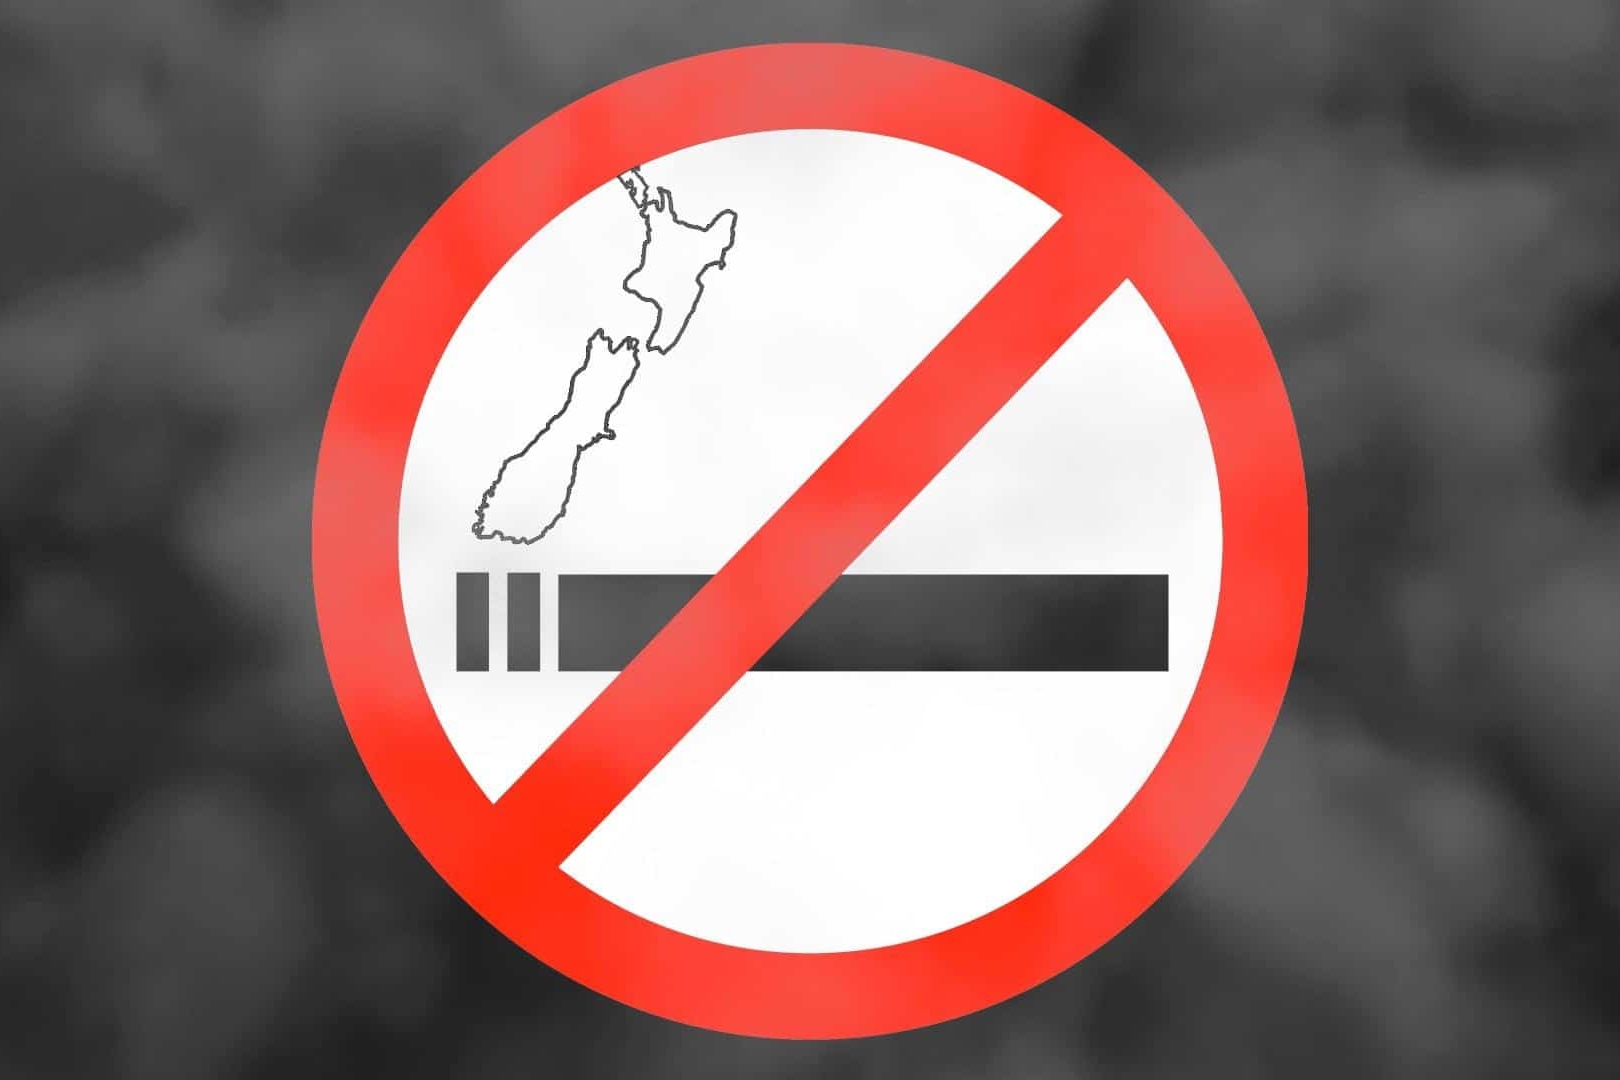 Từng là nước đầu tiên cấm bán thuốc lá cho người trẻ, nay New Zealand đã bỏ lệnh cấm